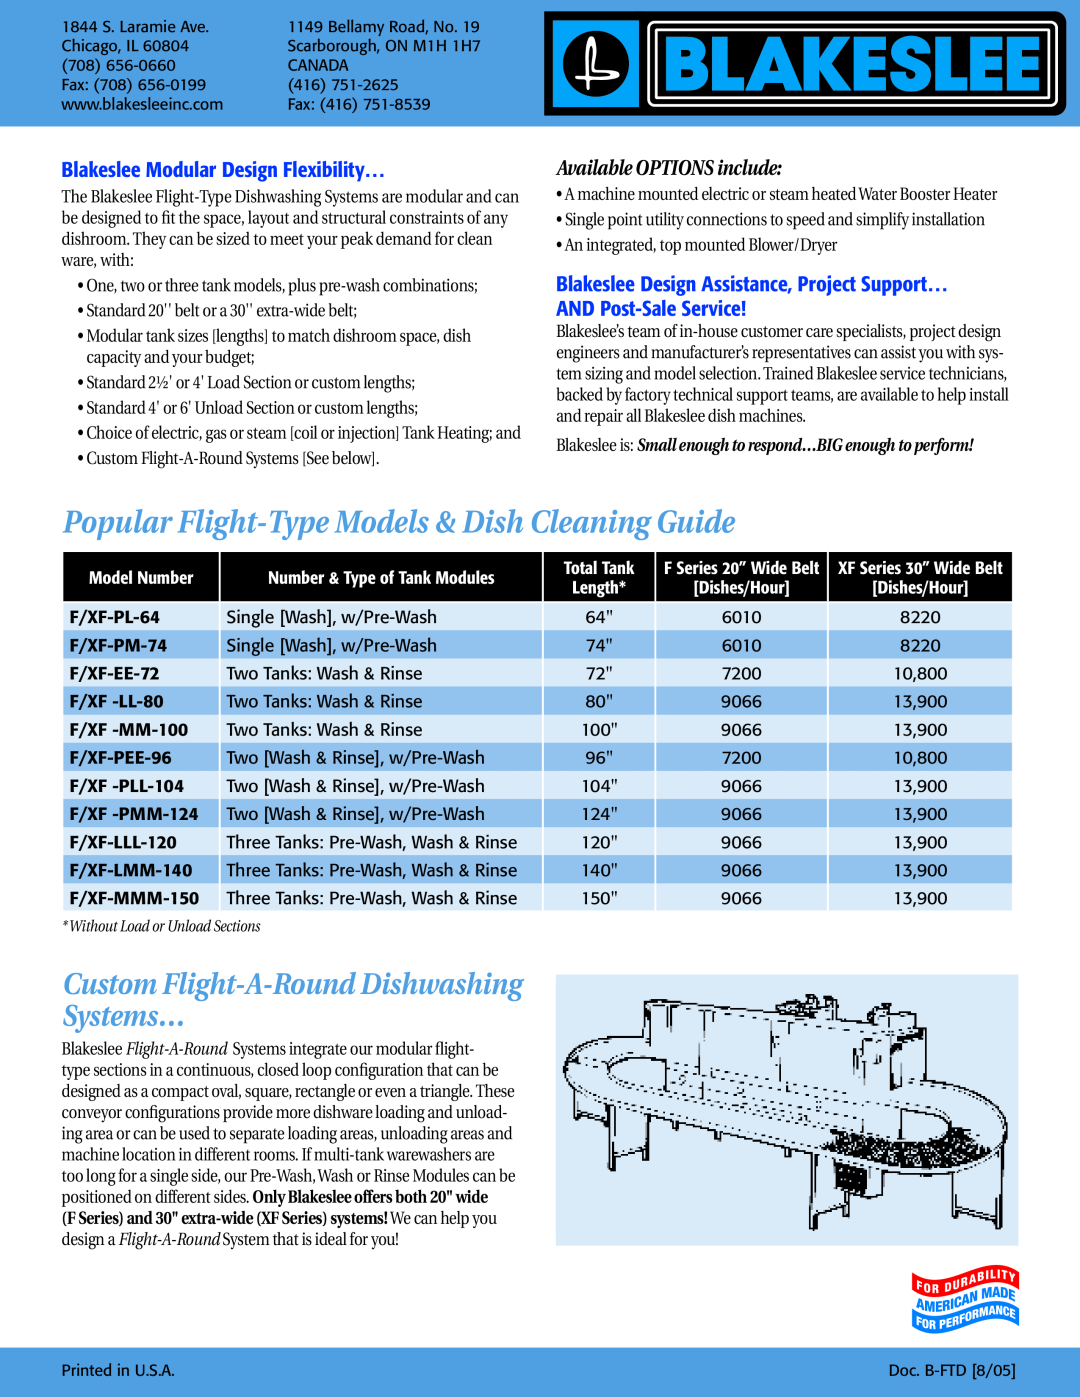 Blakeslee Dishwashing & Kitchen Equipment Blakeslee Modular Design Flexibility…, Custom Flight-A-RoundDishwashing Systems… 